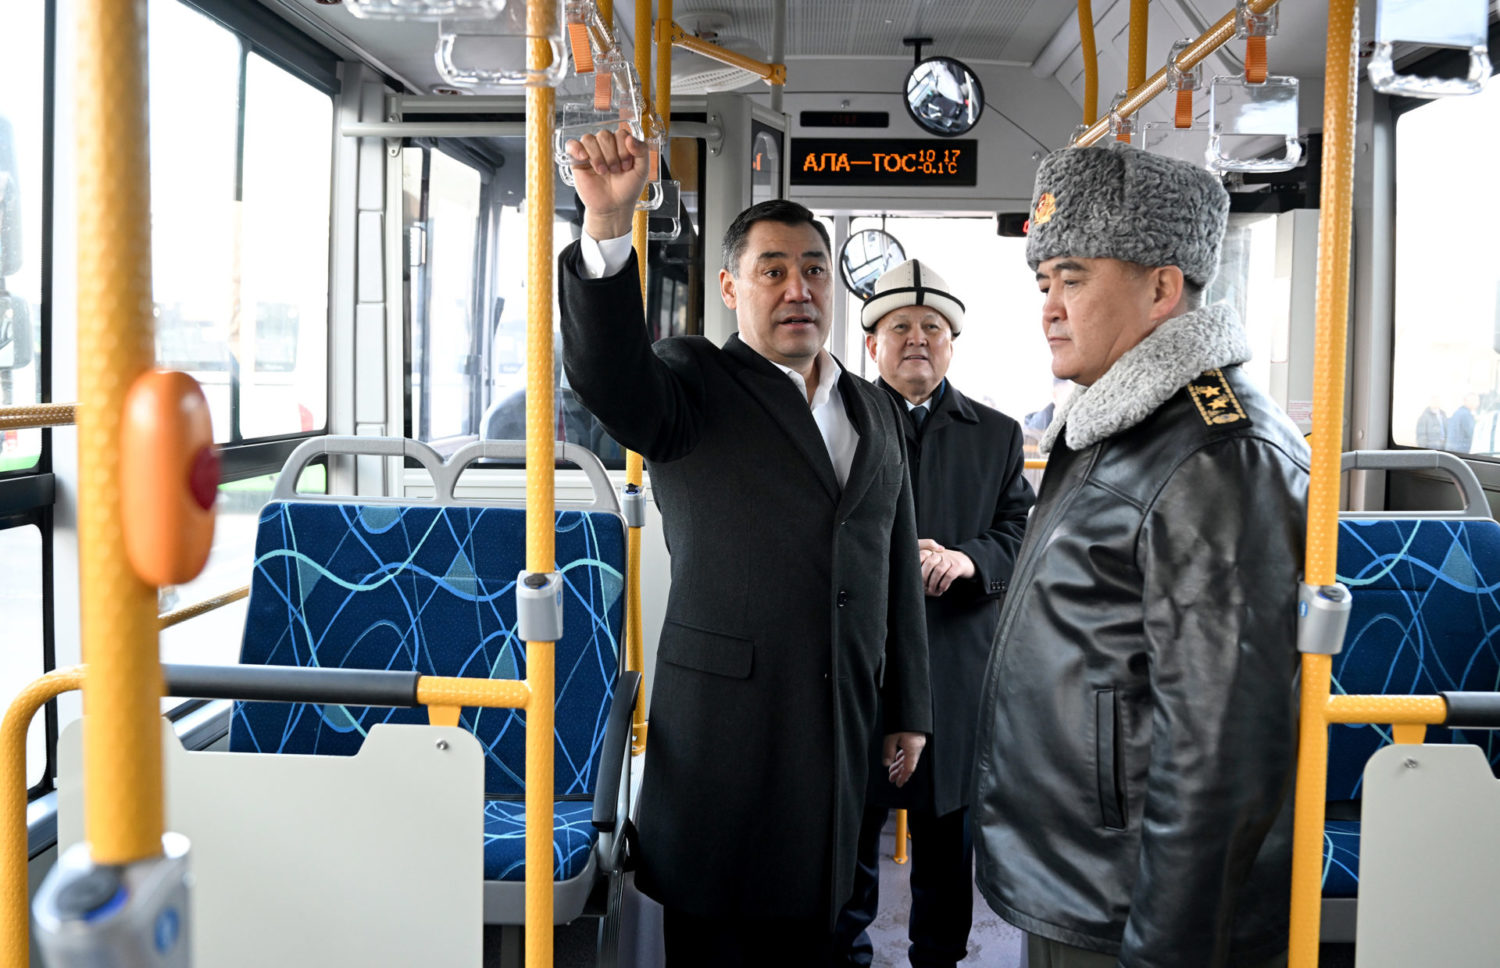 Бишкекте адистештирилген техника жана автобустарды тапшыруу аземи өттү  